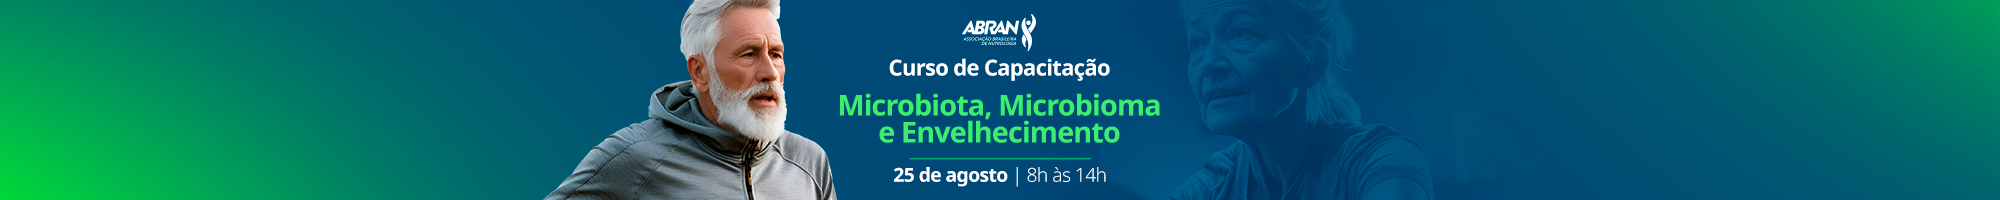 Curso de Capacitação - Microbiota, Microbioma e Envelhecimento